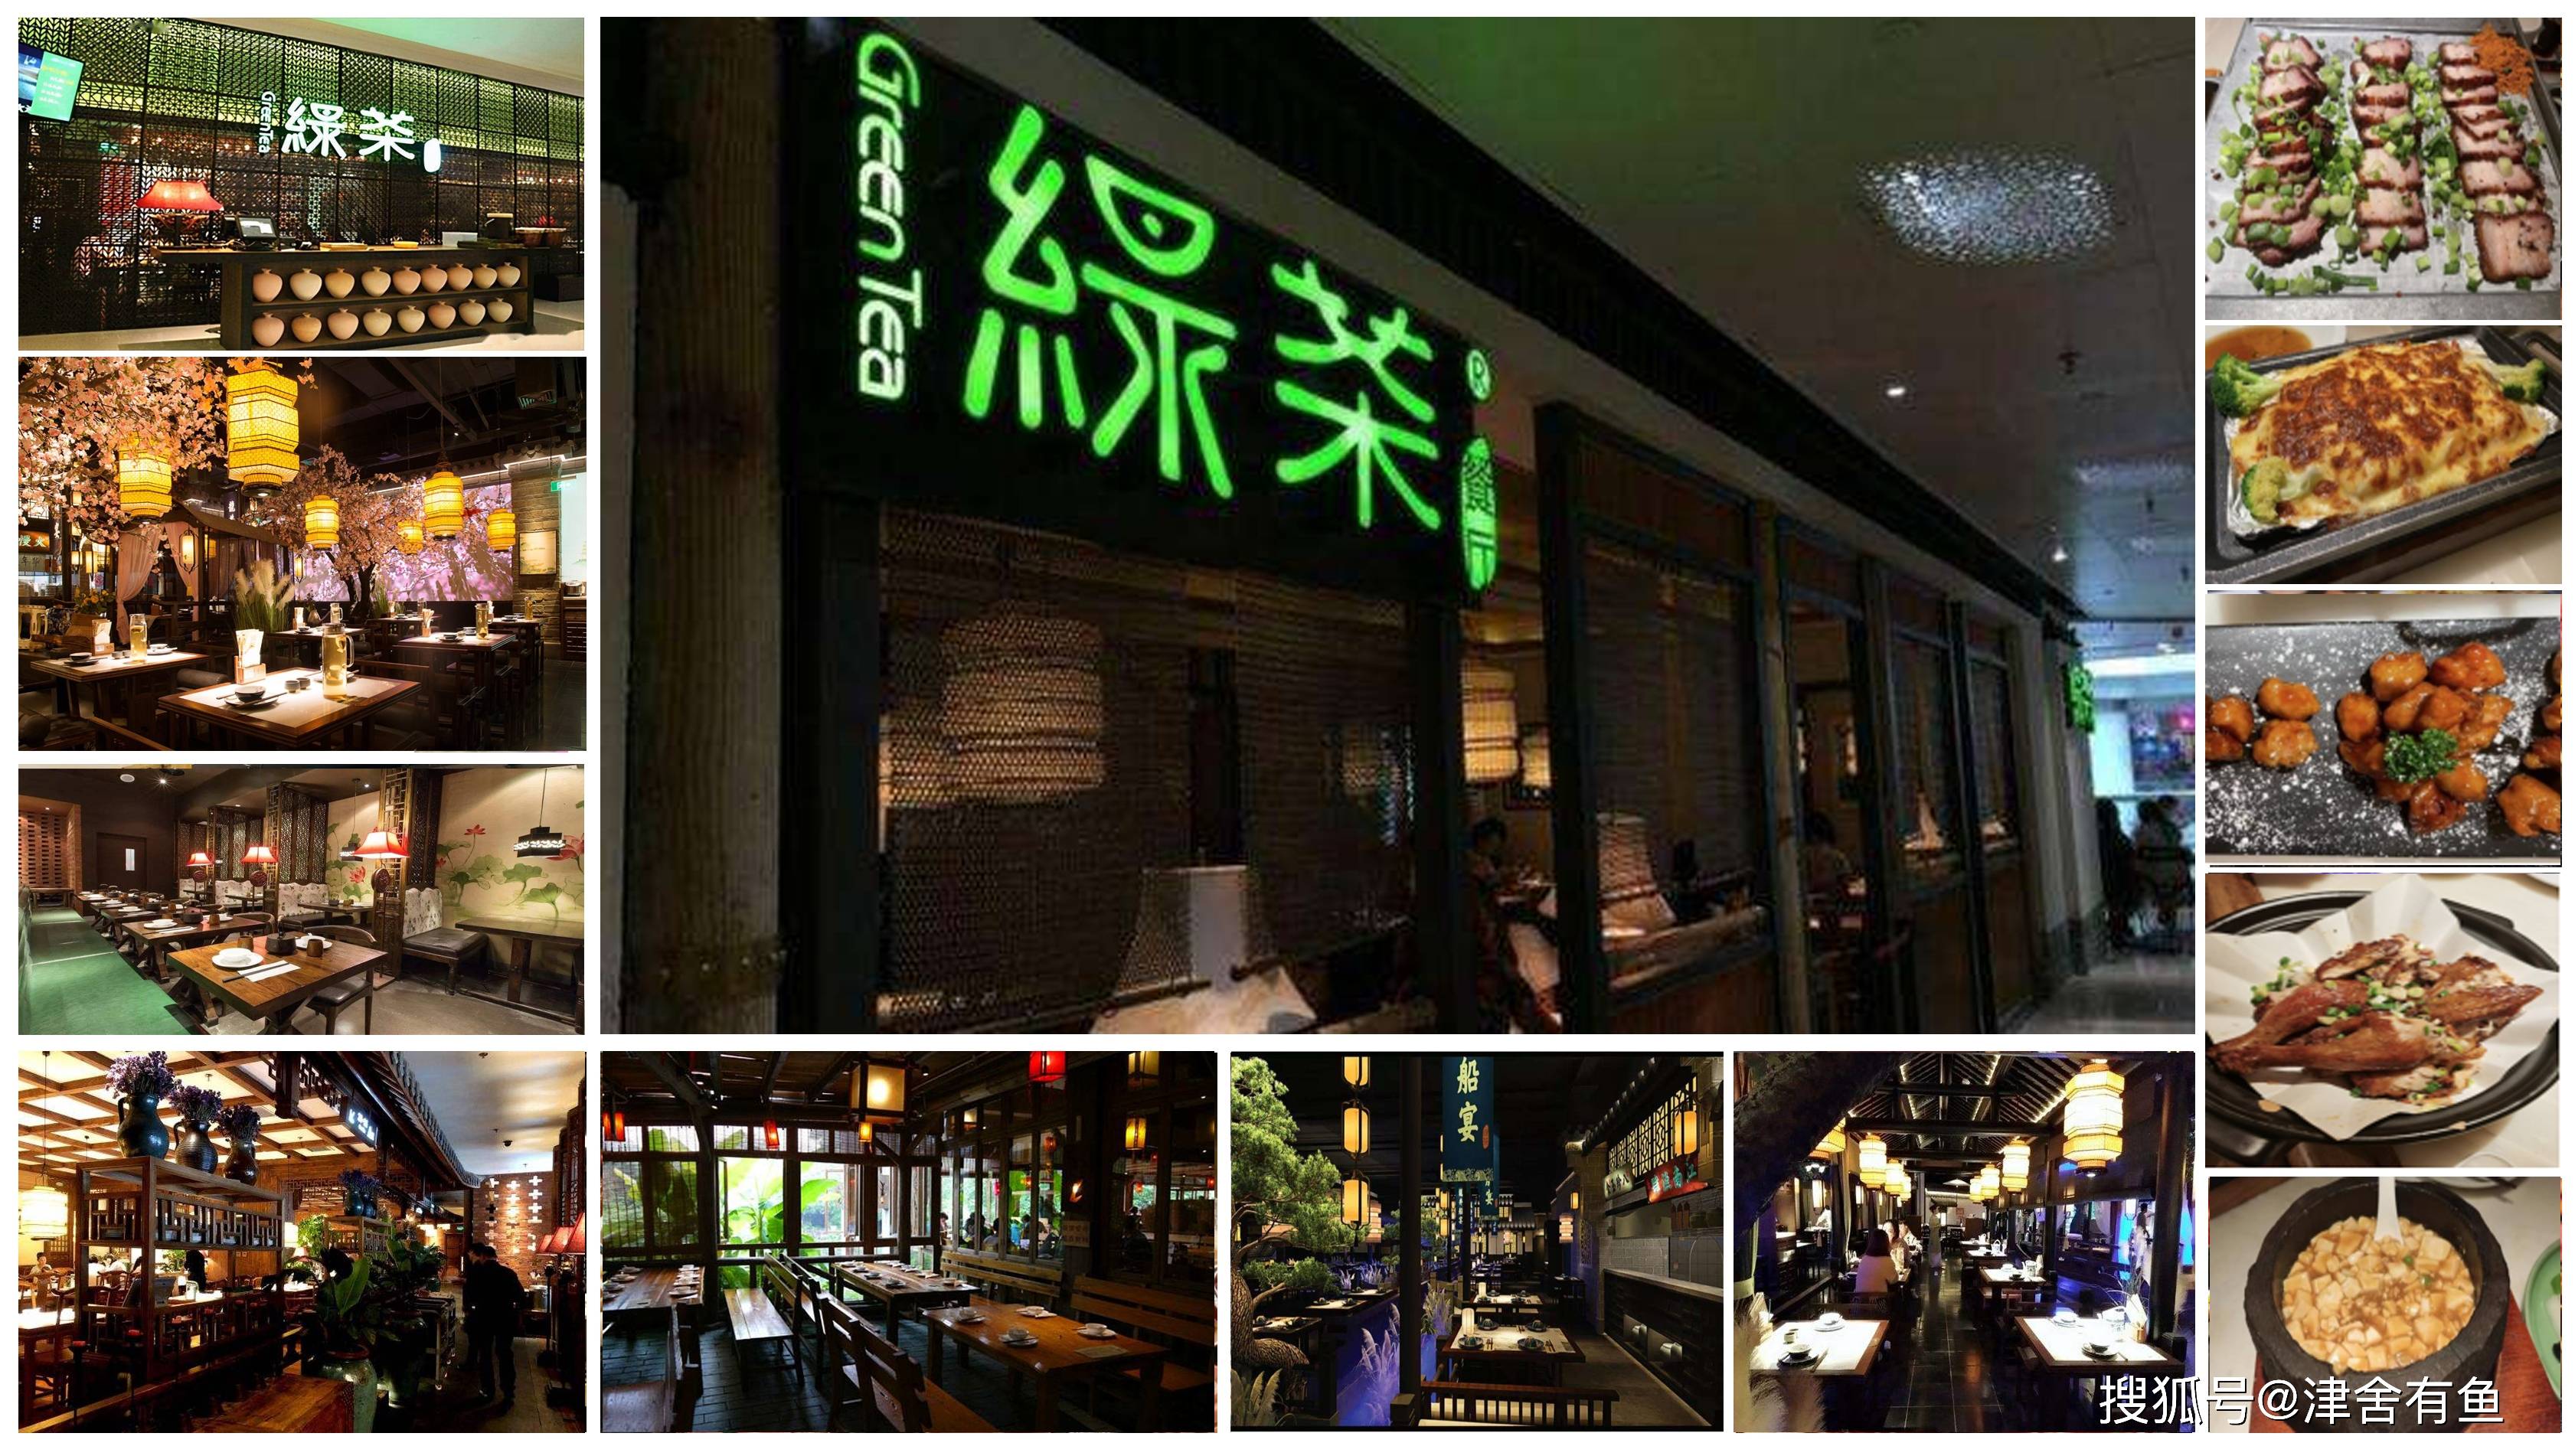 万象城绿茶餐厅必吃的菜_深圳万象城有绿茶餐厅_深圳万象城绿茶餐厅在几楼